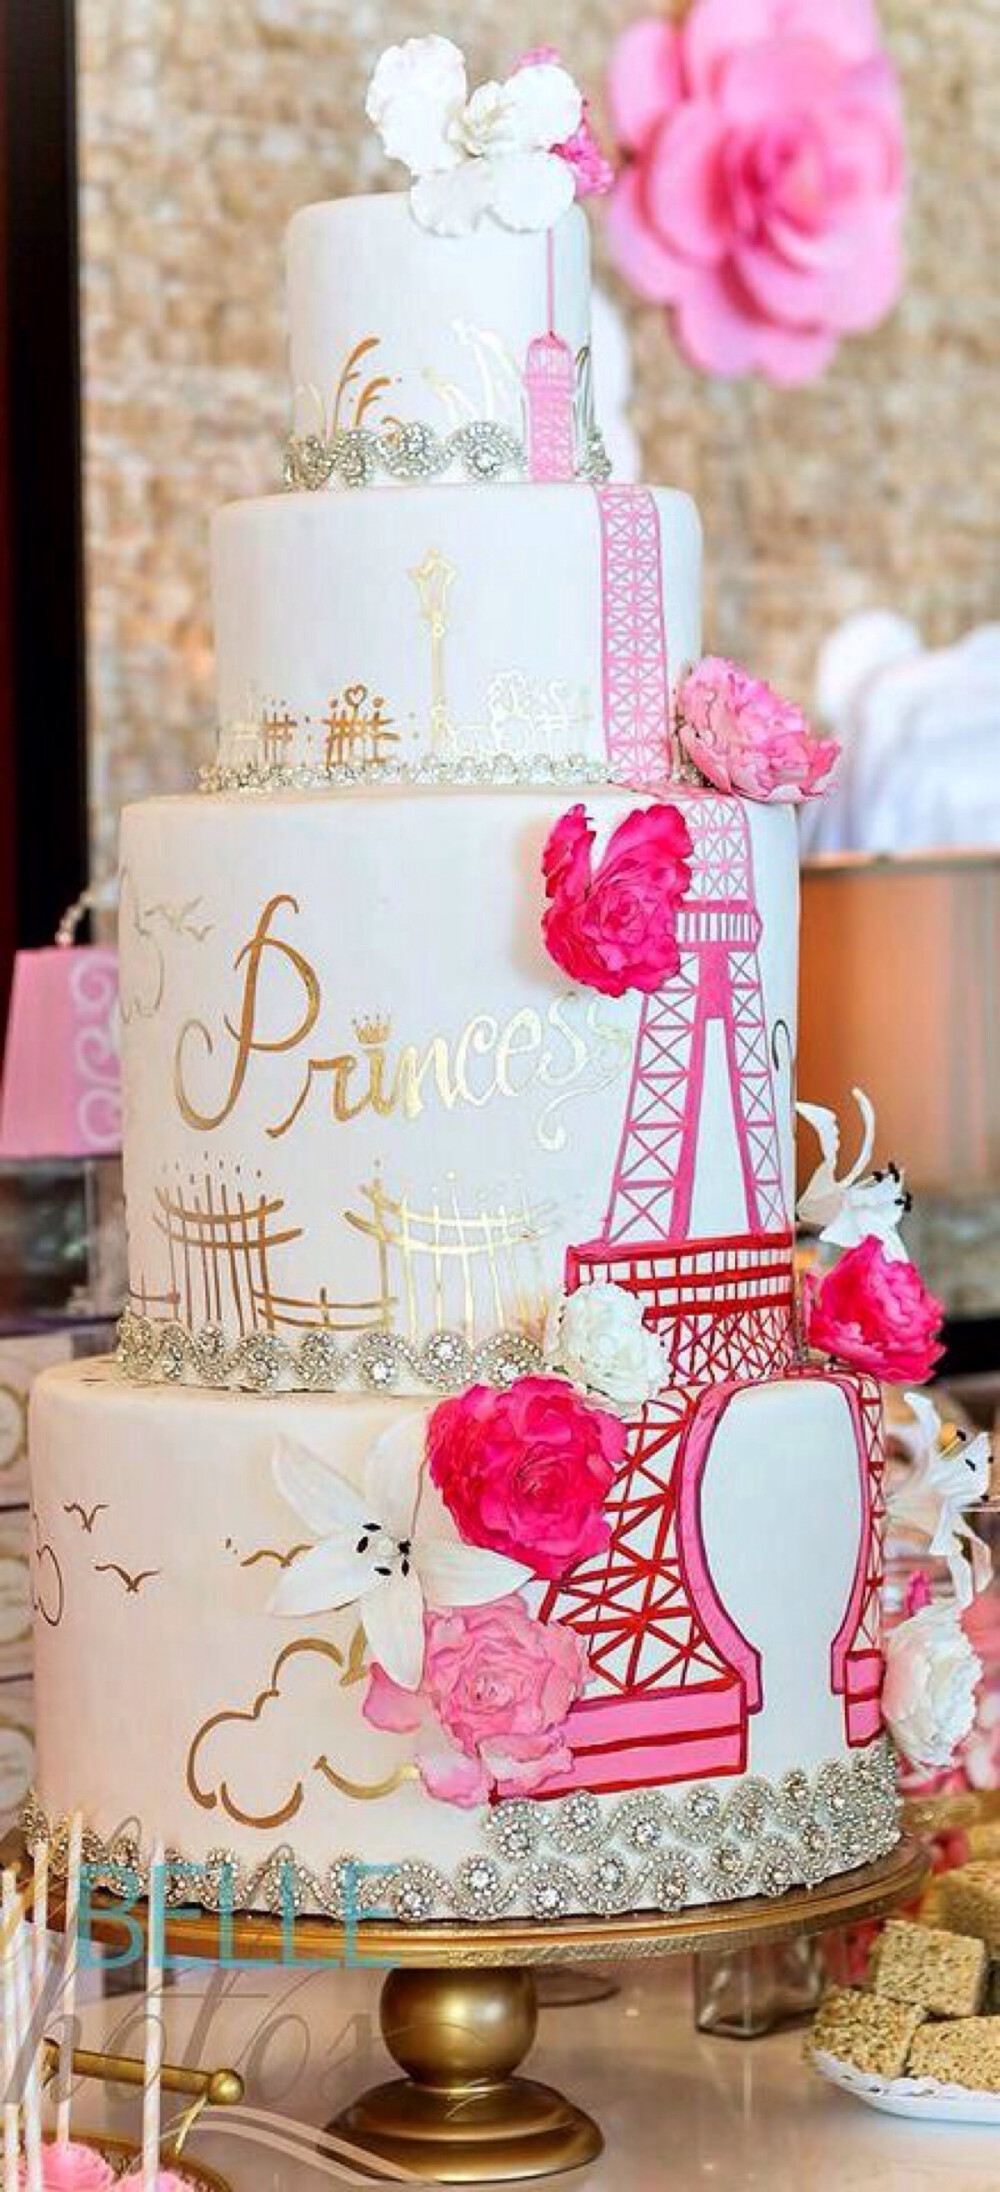 手绘蛋糕 巴黎铁塔